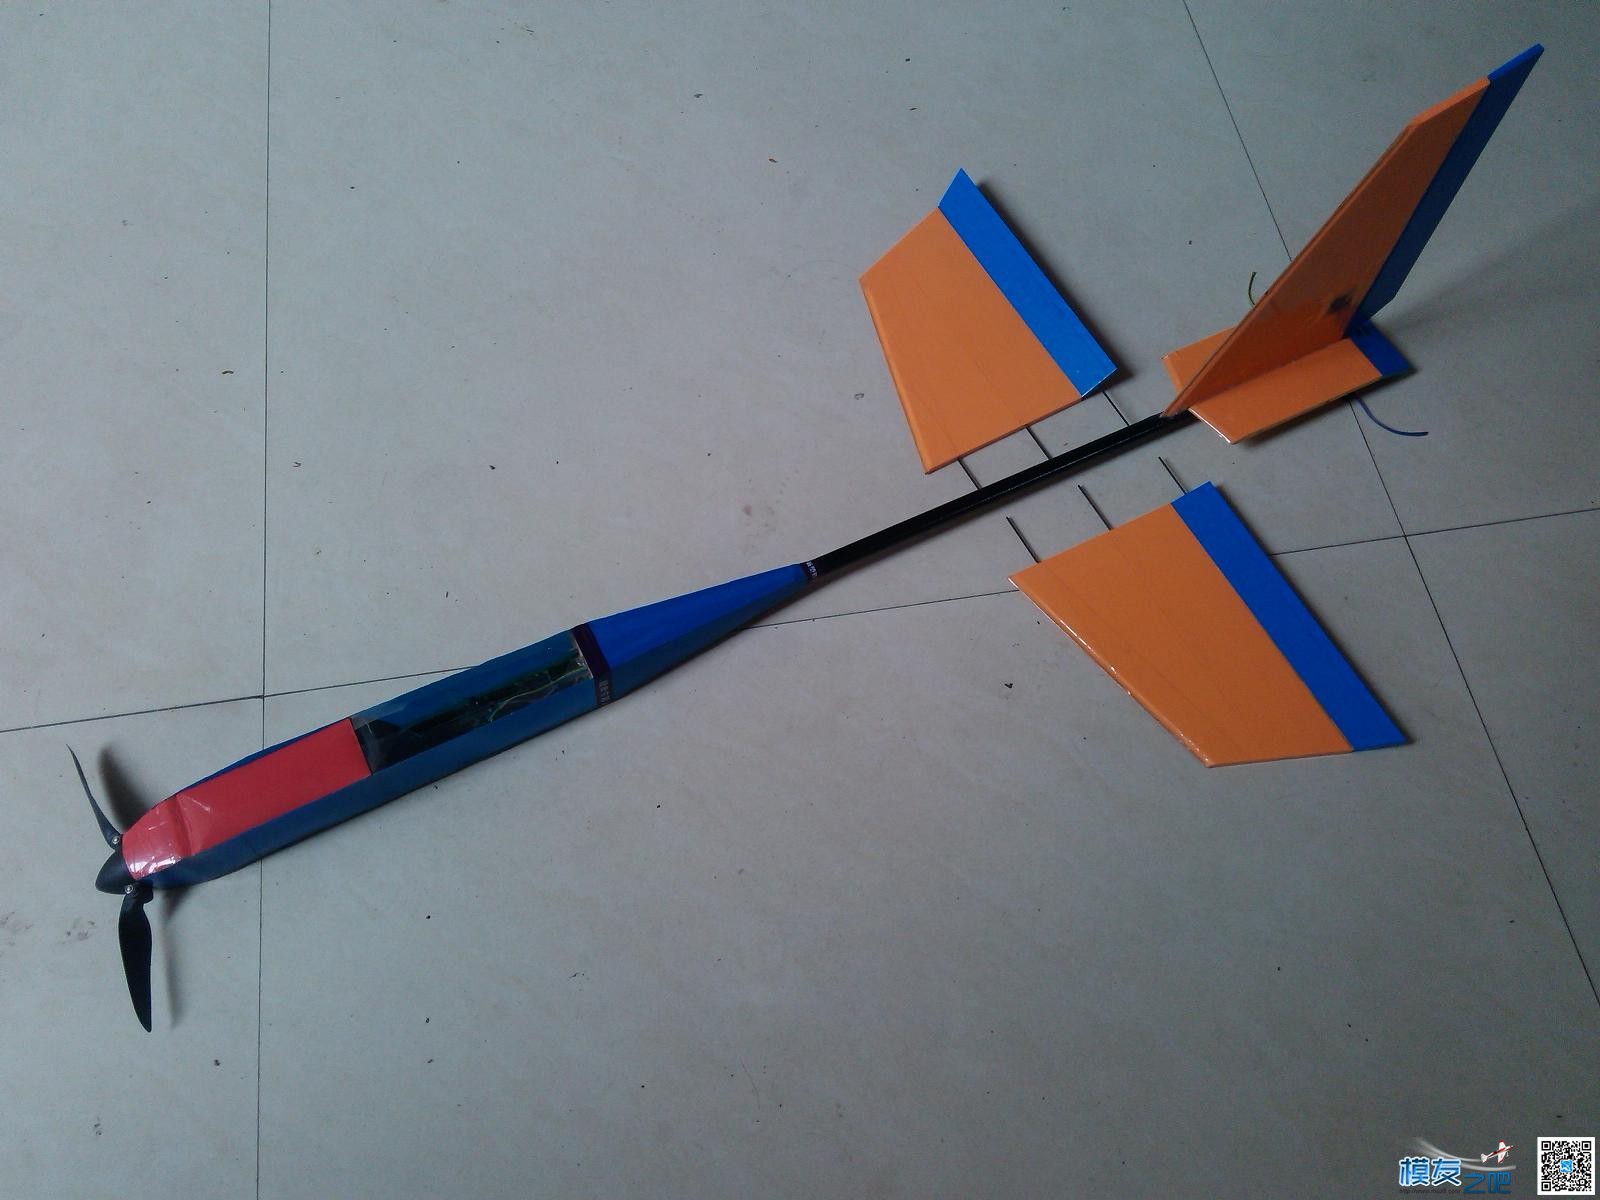 用瓶子折纸法制作滑翔机机头机身。已完成。老鸟别笑。.... 碳纤维,滑翔机,制作,专业 作者:cyb2688 6900 